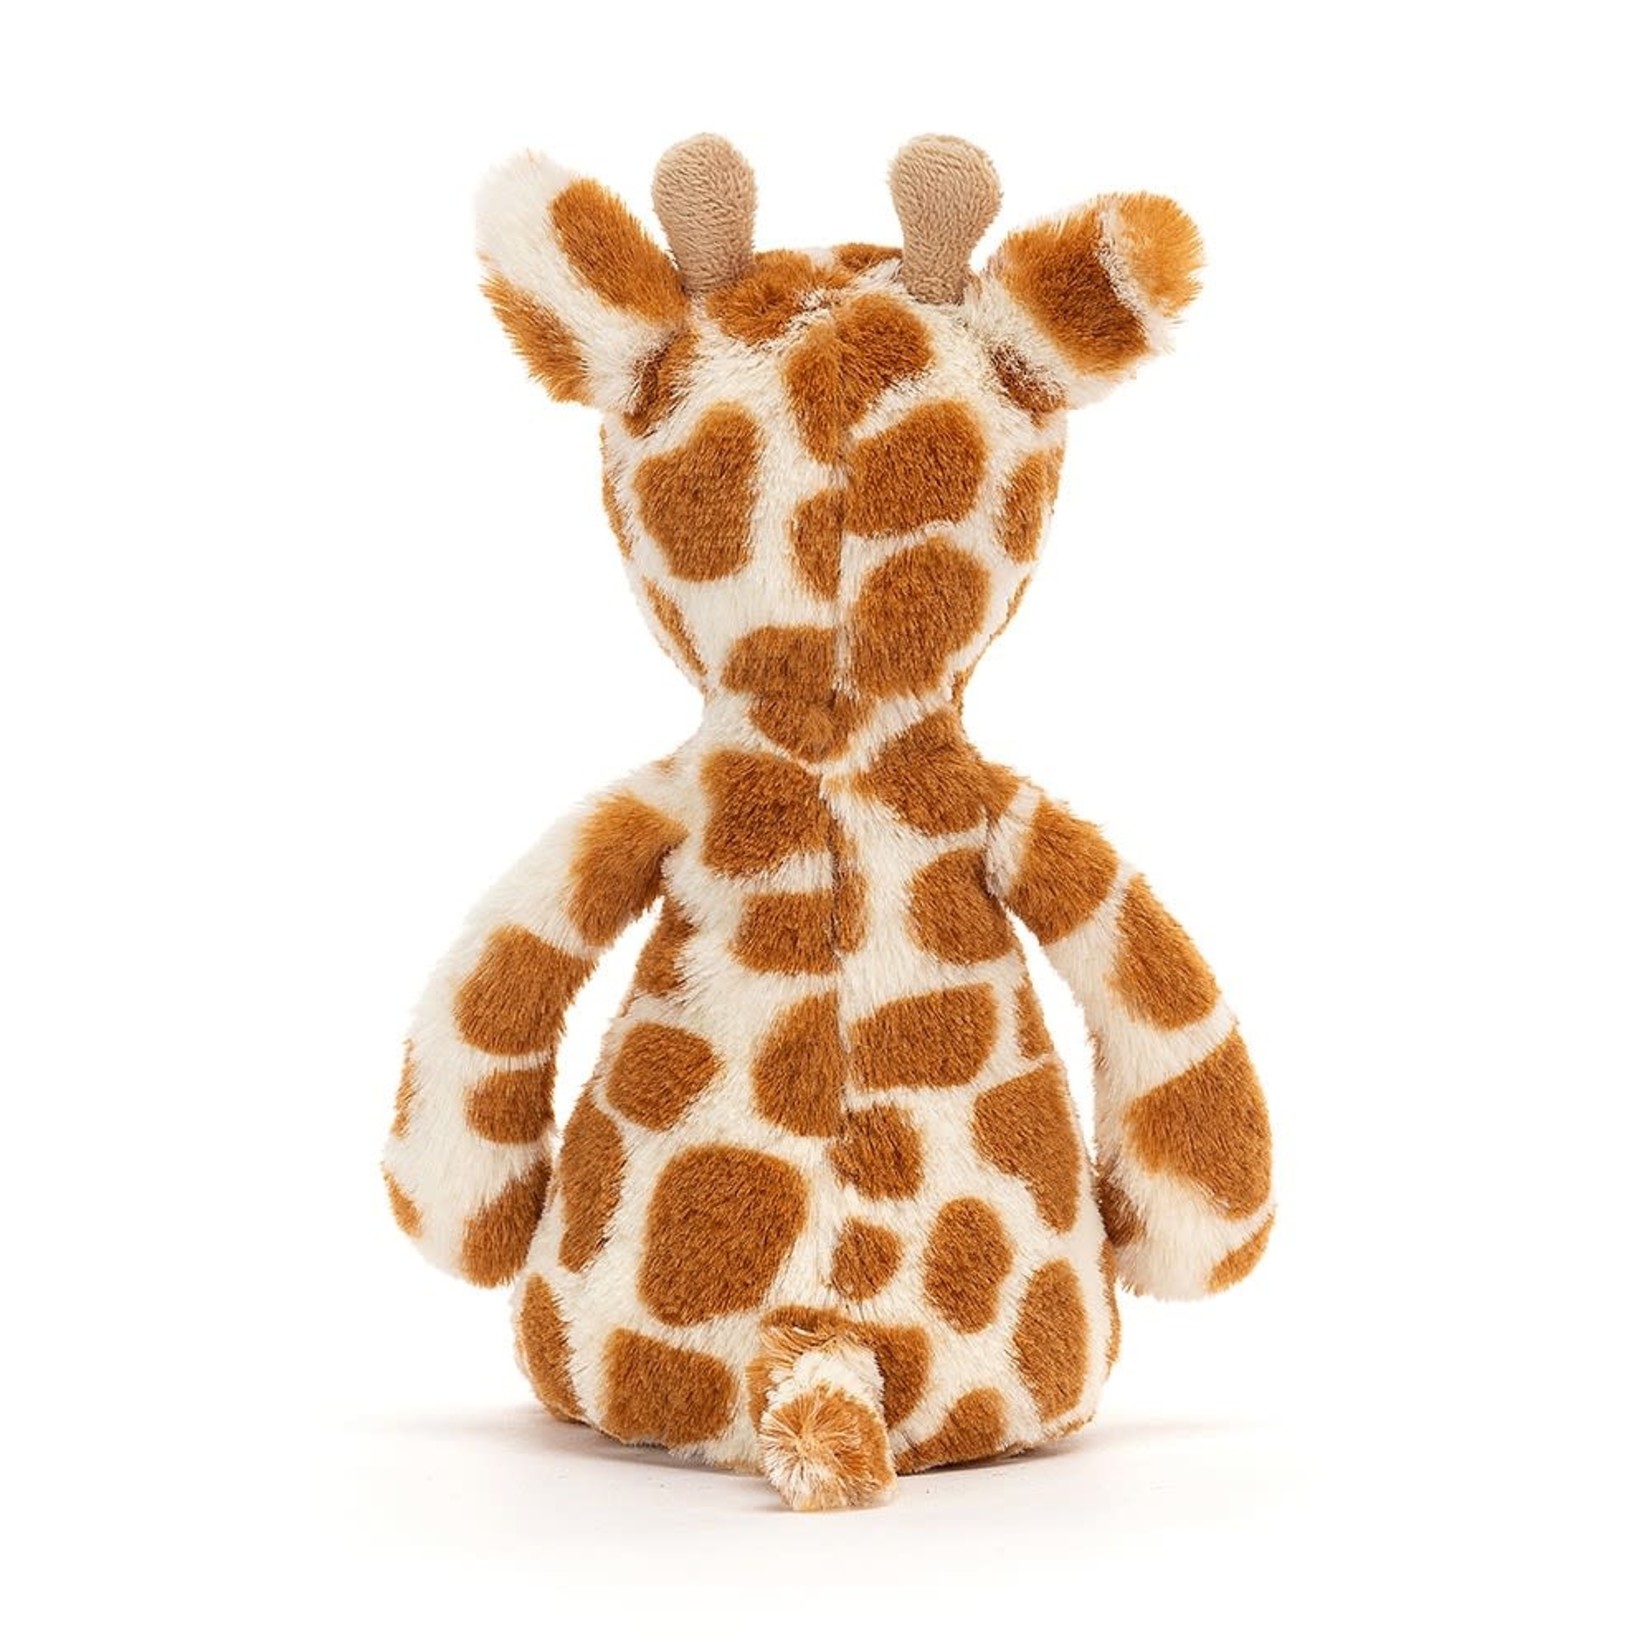 Jellycat Bashful Giraffe Small 7"